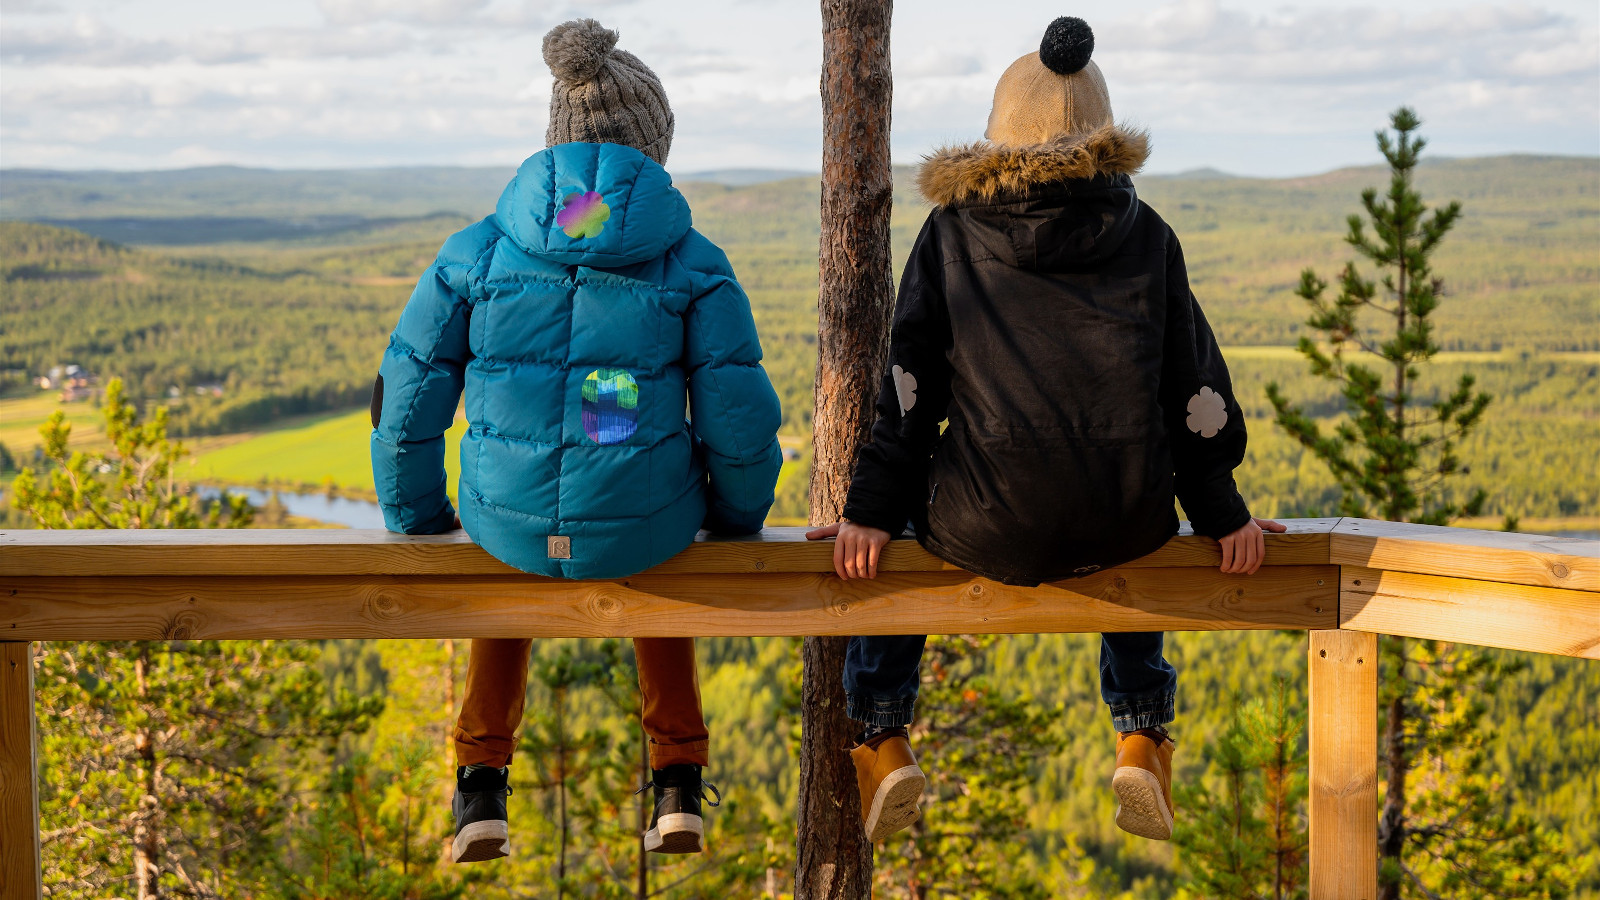 Kuvassa on kaksi tyttöä takaperin ja he istuvat aidan päällä kulmassa.  Näkymä on ylhäältä alaspäin.  Maisema on syksyisen värikäs laaja metsämaisema.